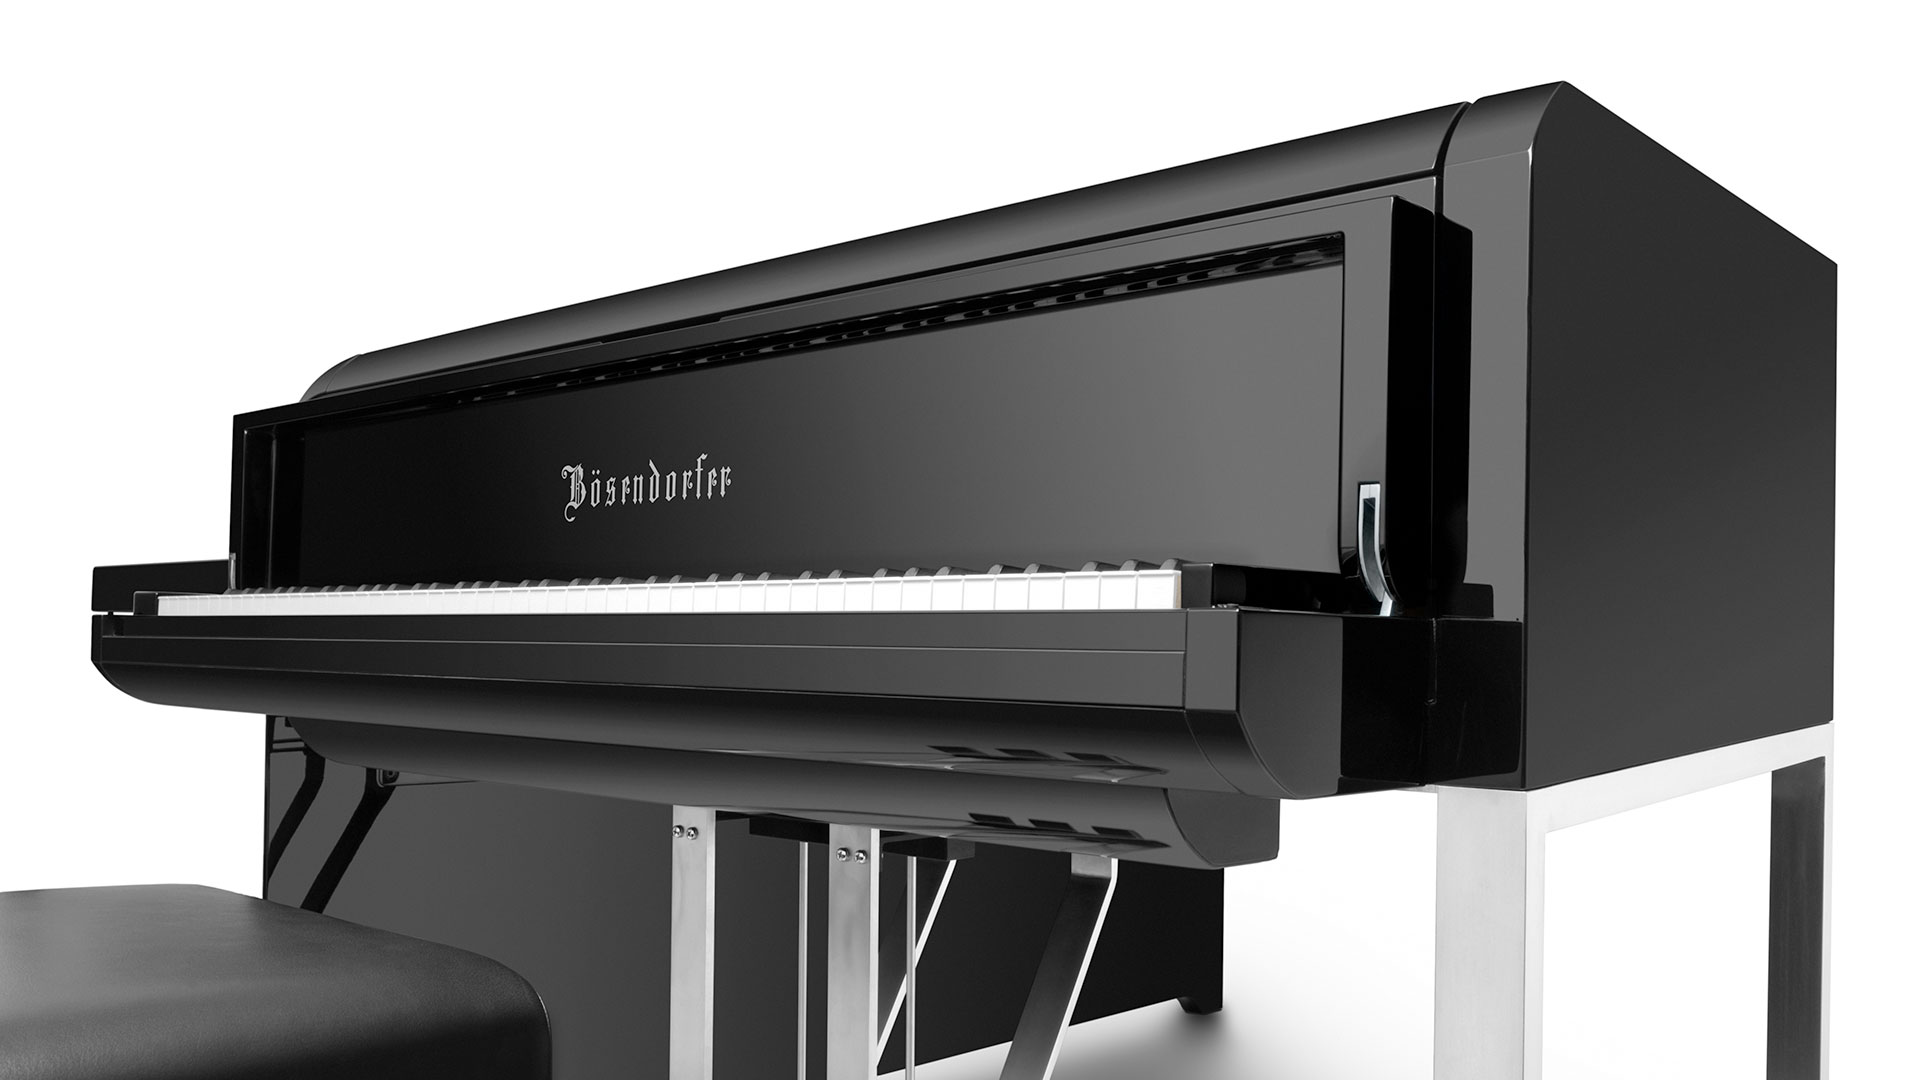 214 Bosendorfer Grand Piano